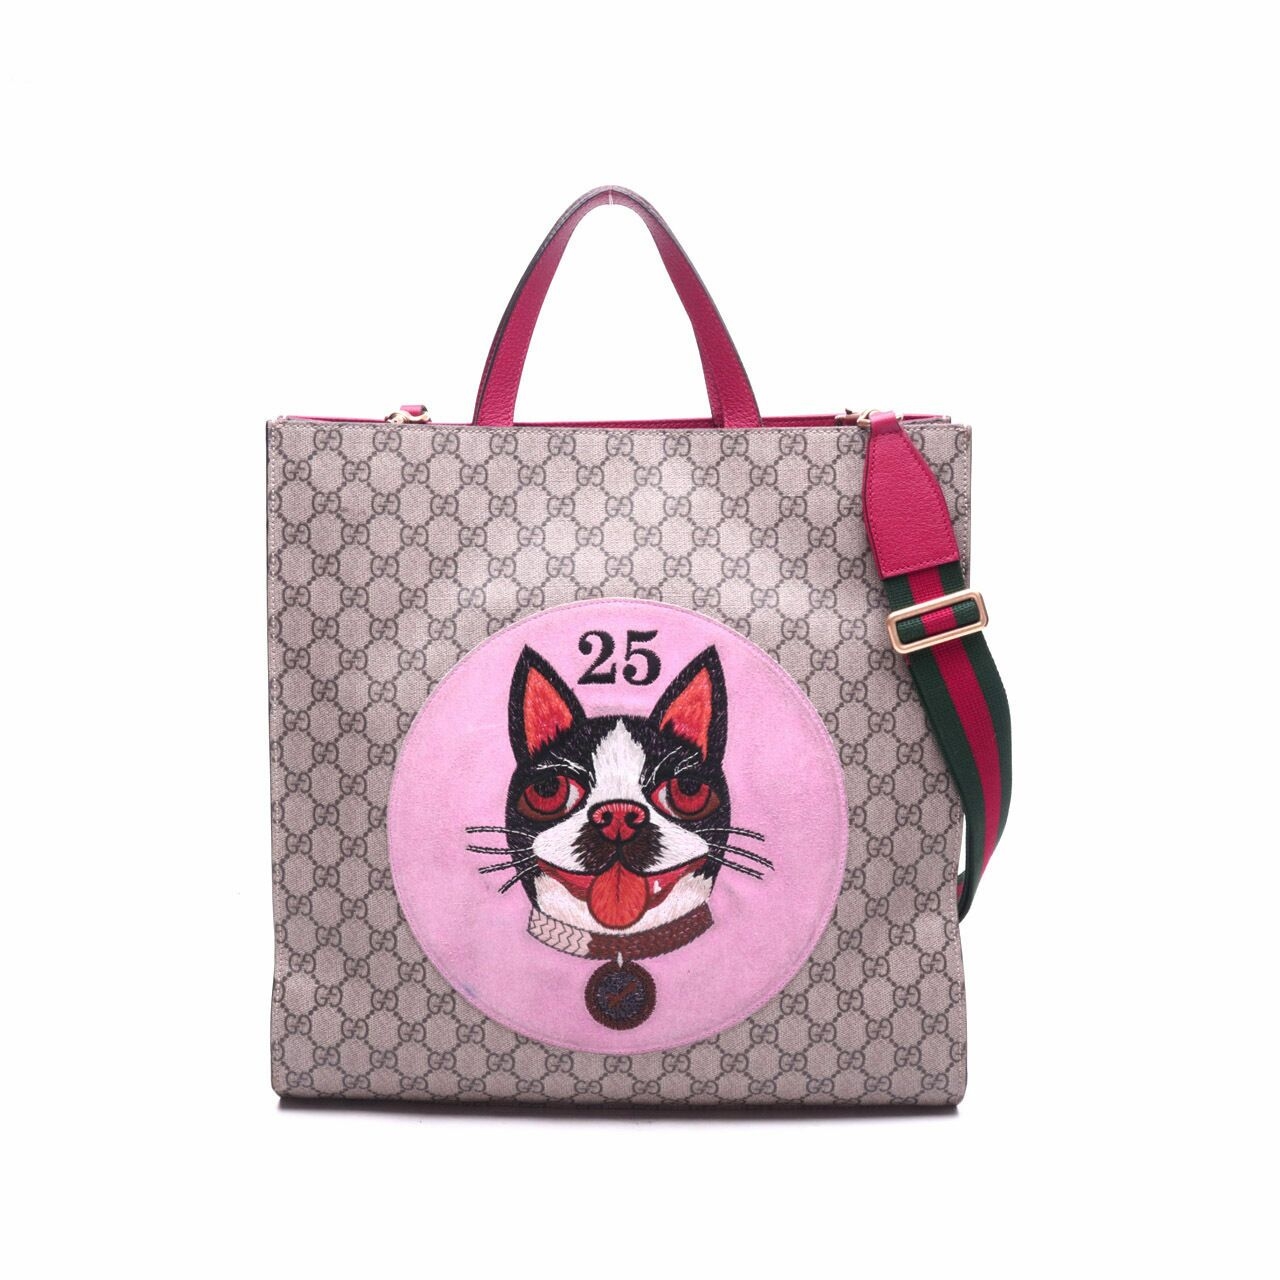 Gucci GG Supreme Bosco Brown/Beige/Pink Tote Bag